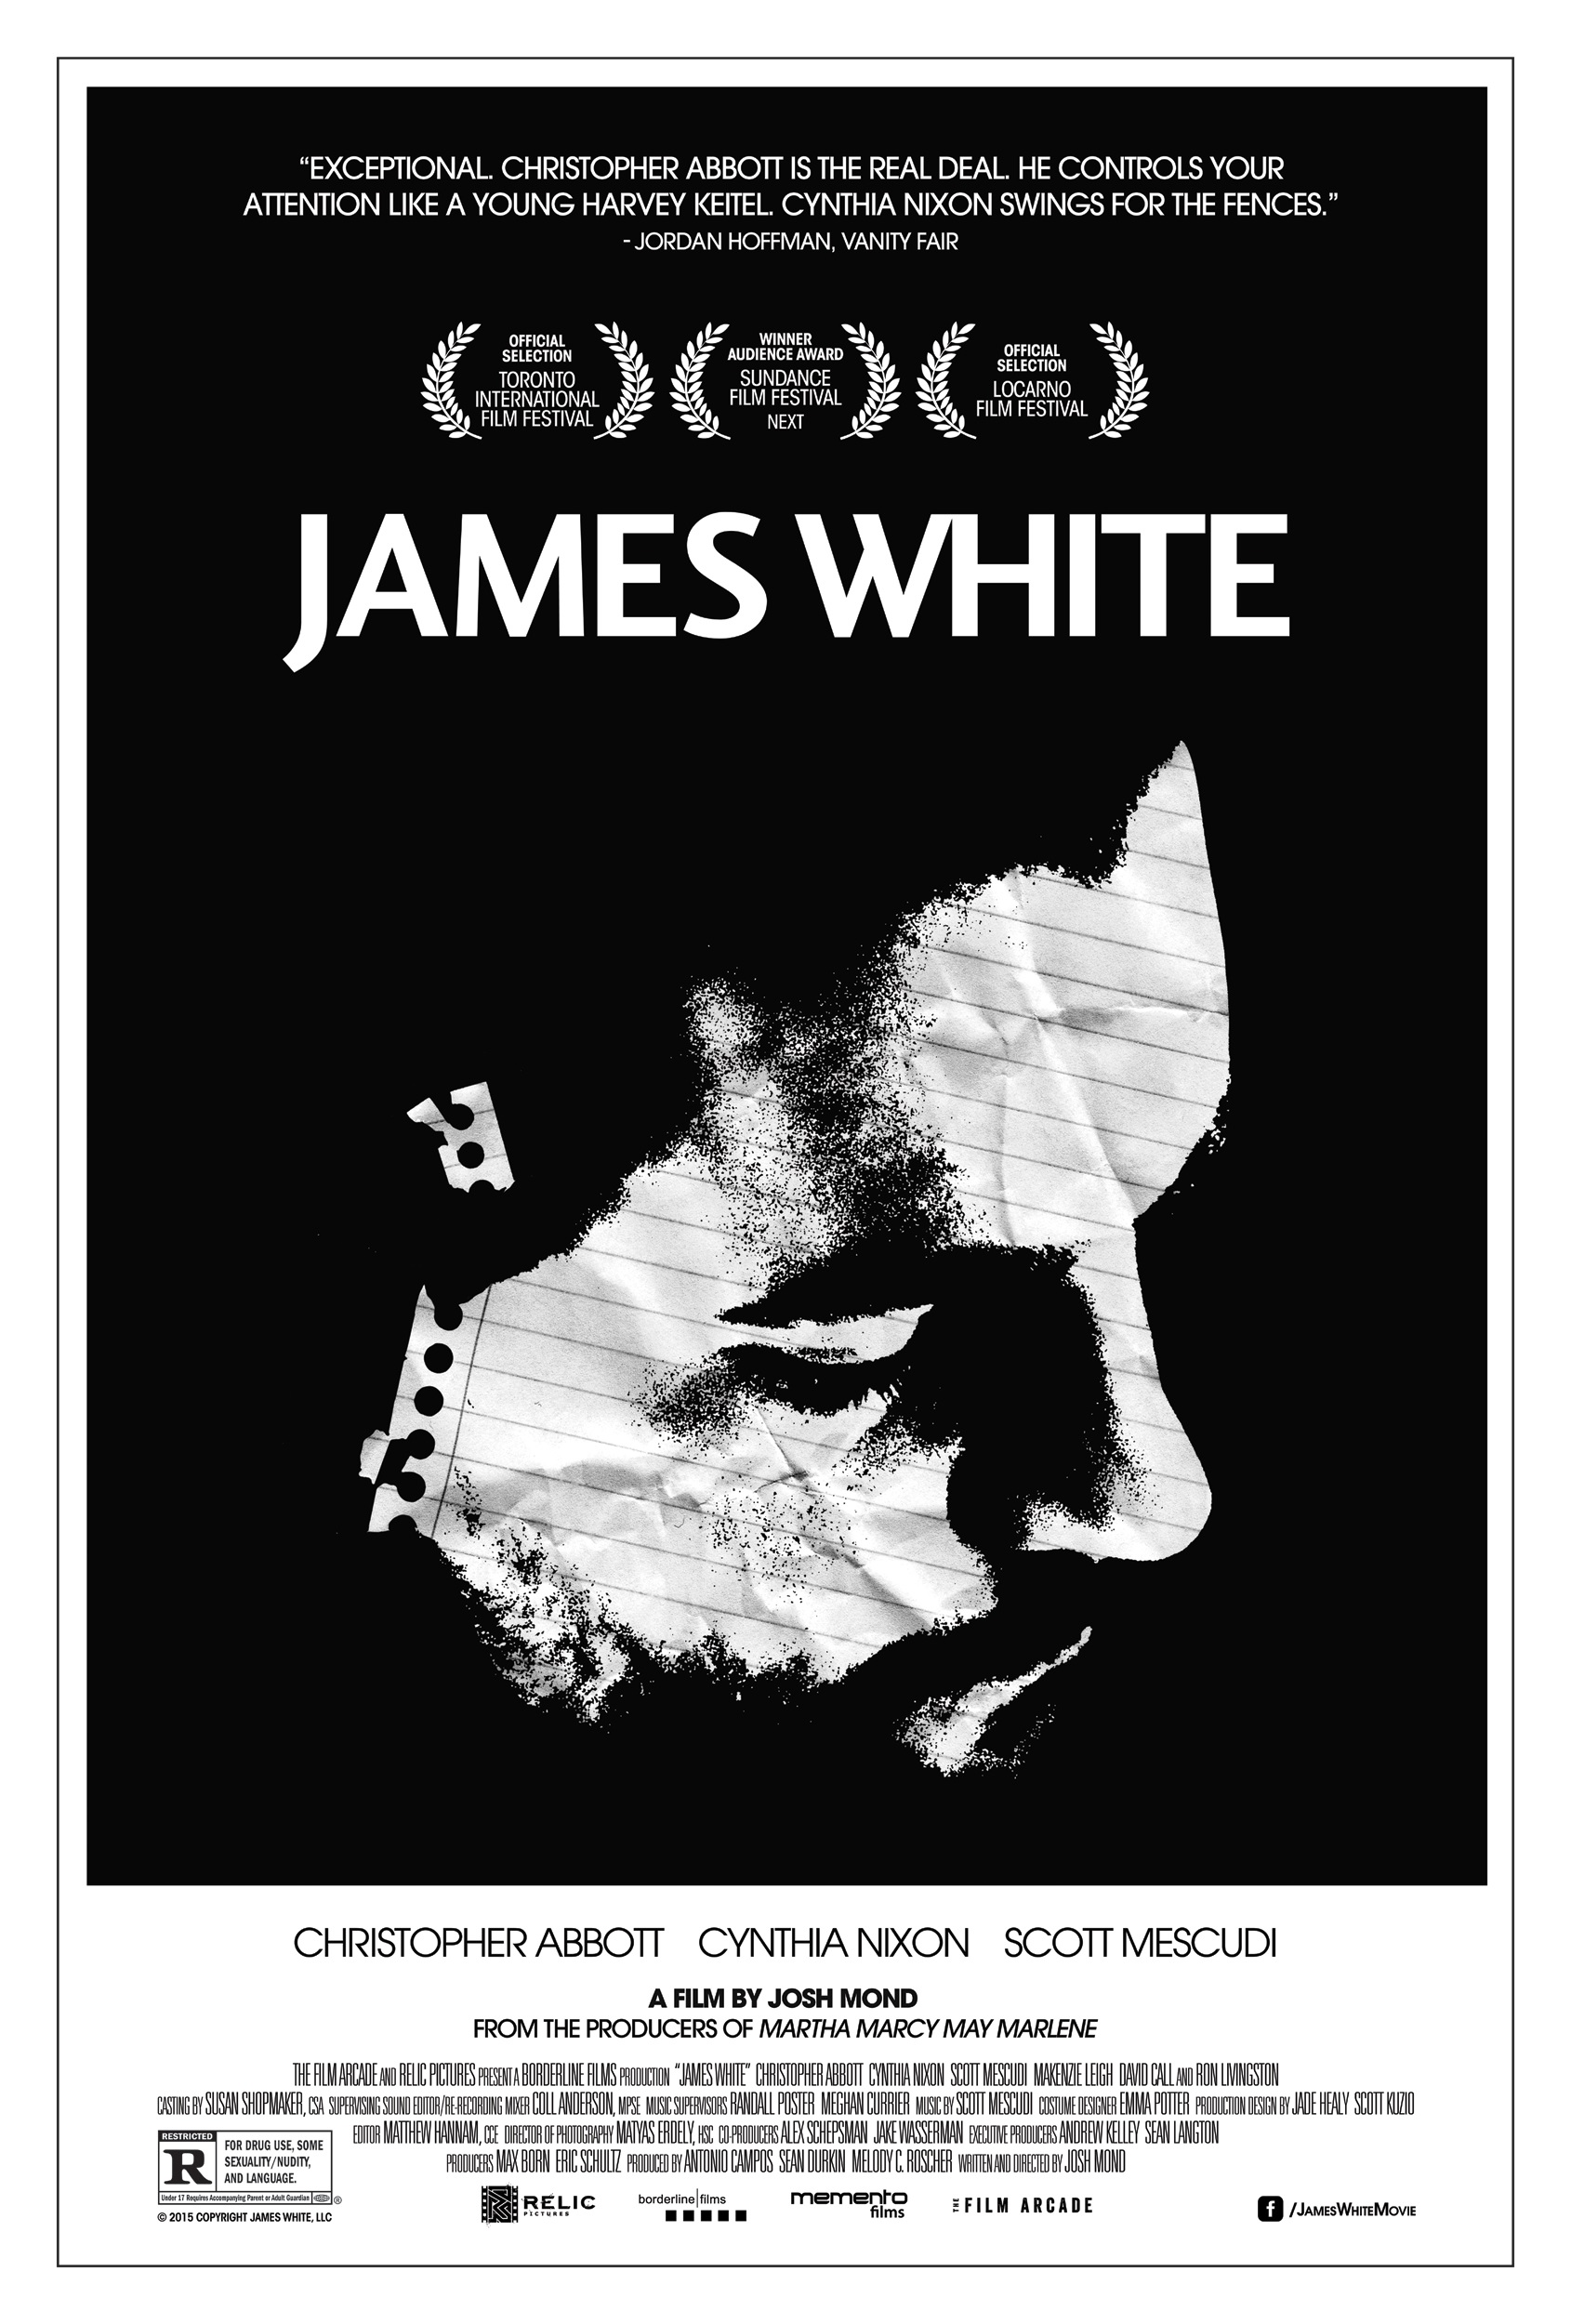 Постер - Джеймс Уайт: 1690x2500 / 680.42 Кб